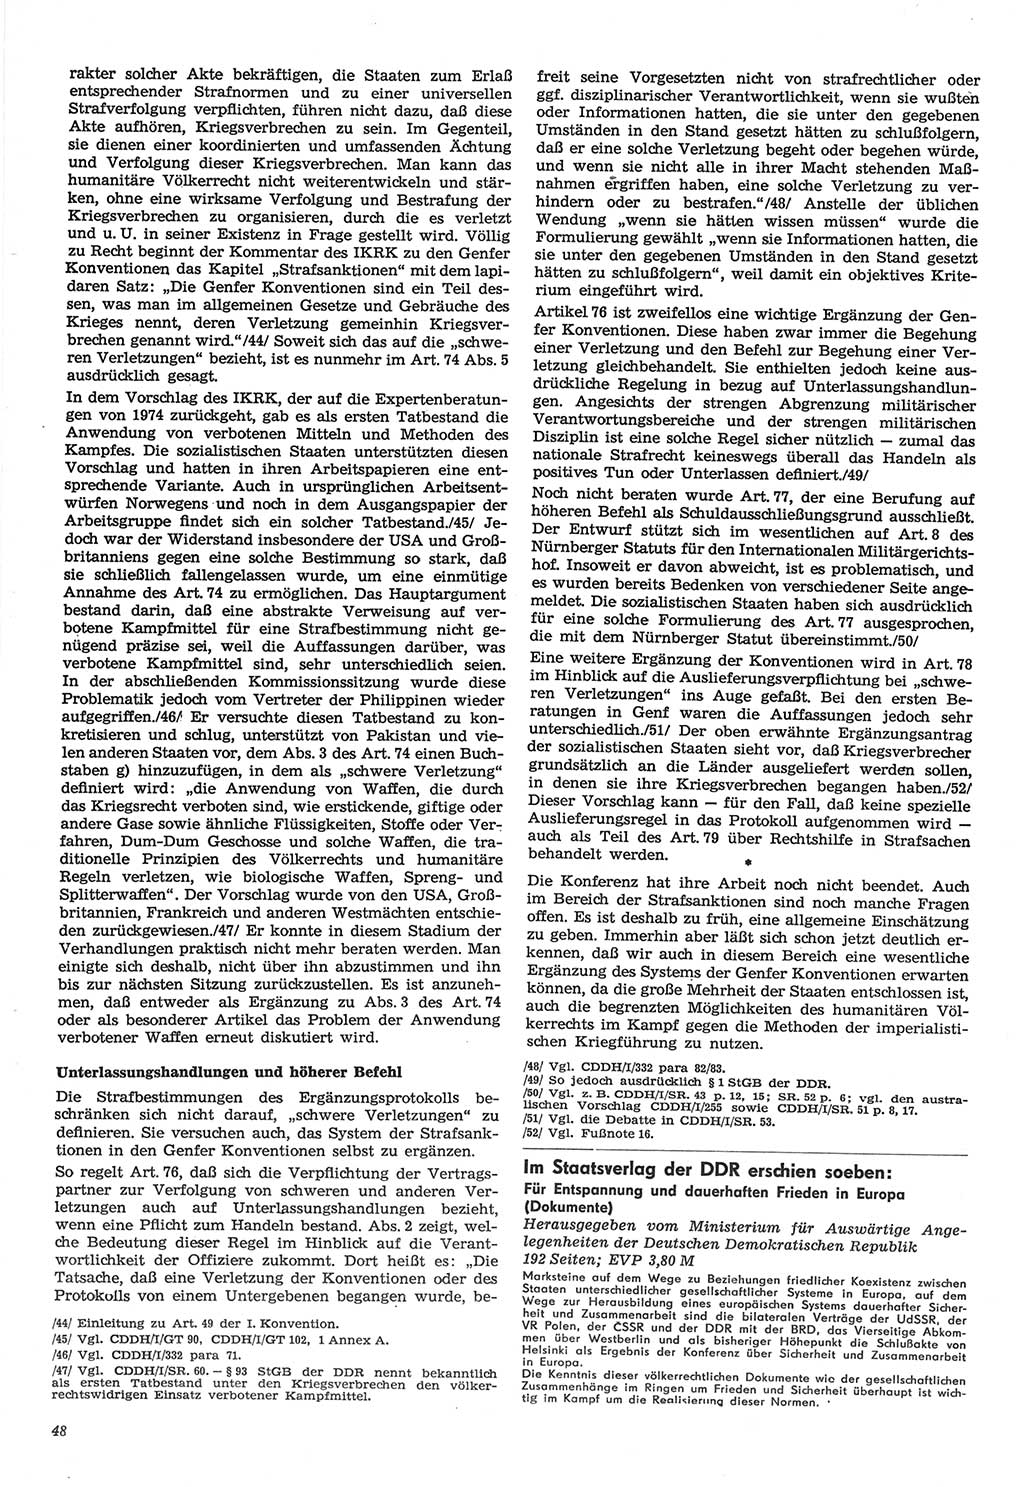 Neue Justiz (NJ), Zeitschrift für Recht und Rechtswissenschaft-Zeitschrift, sozialistisches Recht und Gesetzlichkeit, 31. Jahrgang 1977, Seite 48 (NJ DDR 1977, S. 48)